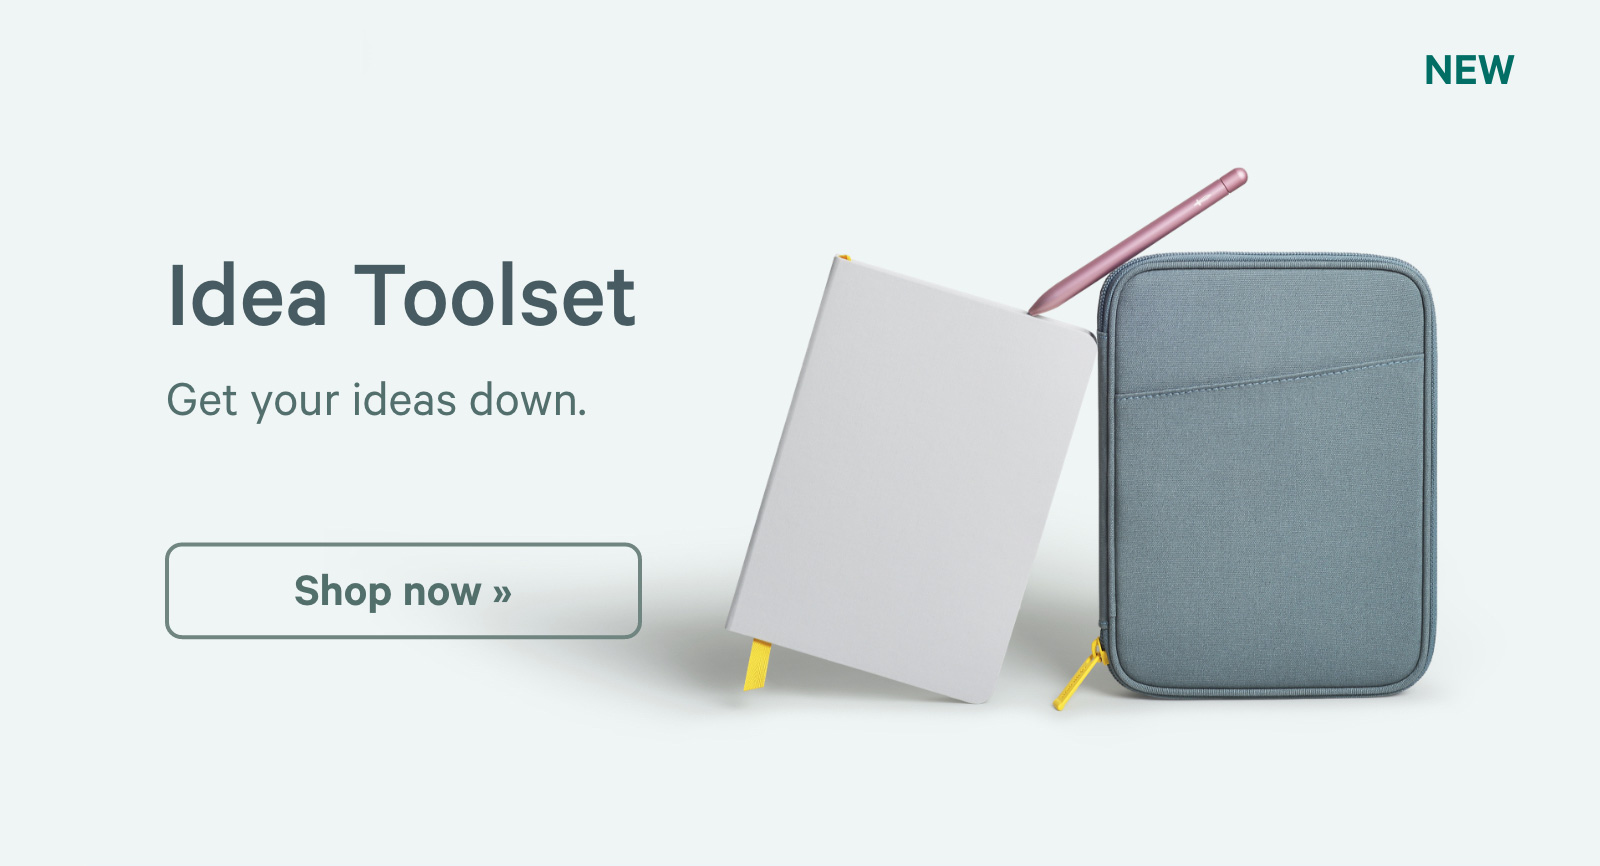 Idea Toolset. Get your ideas down. Shop now ?